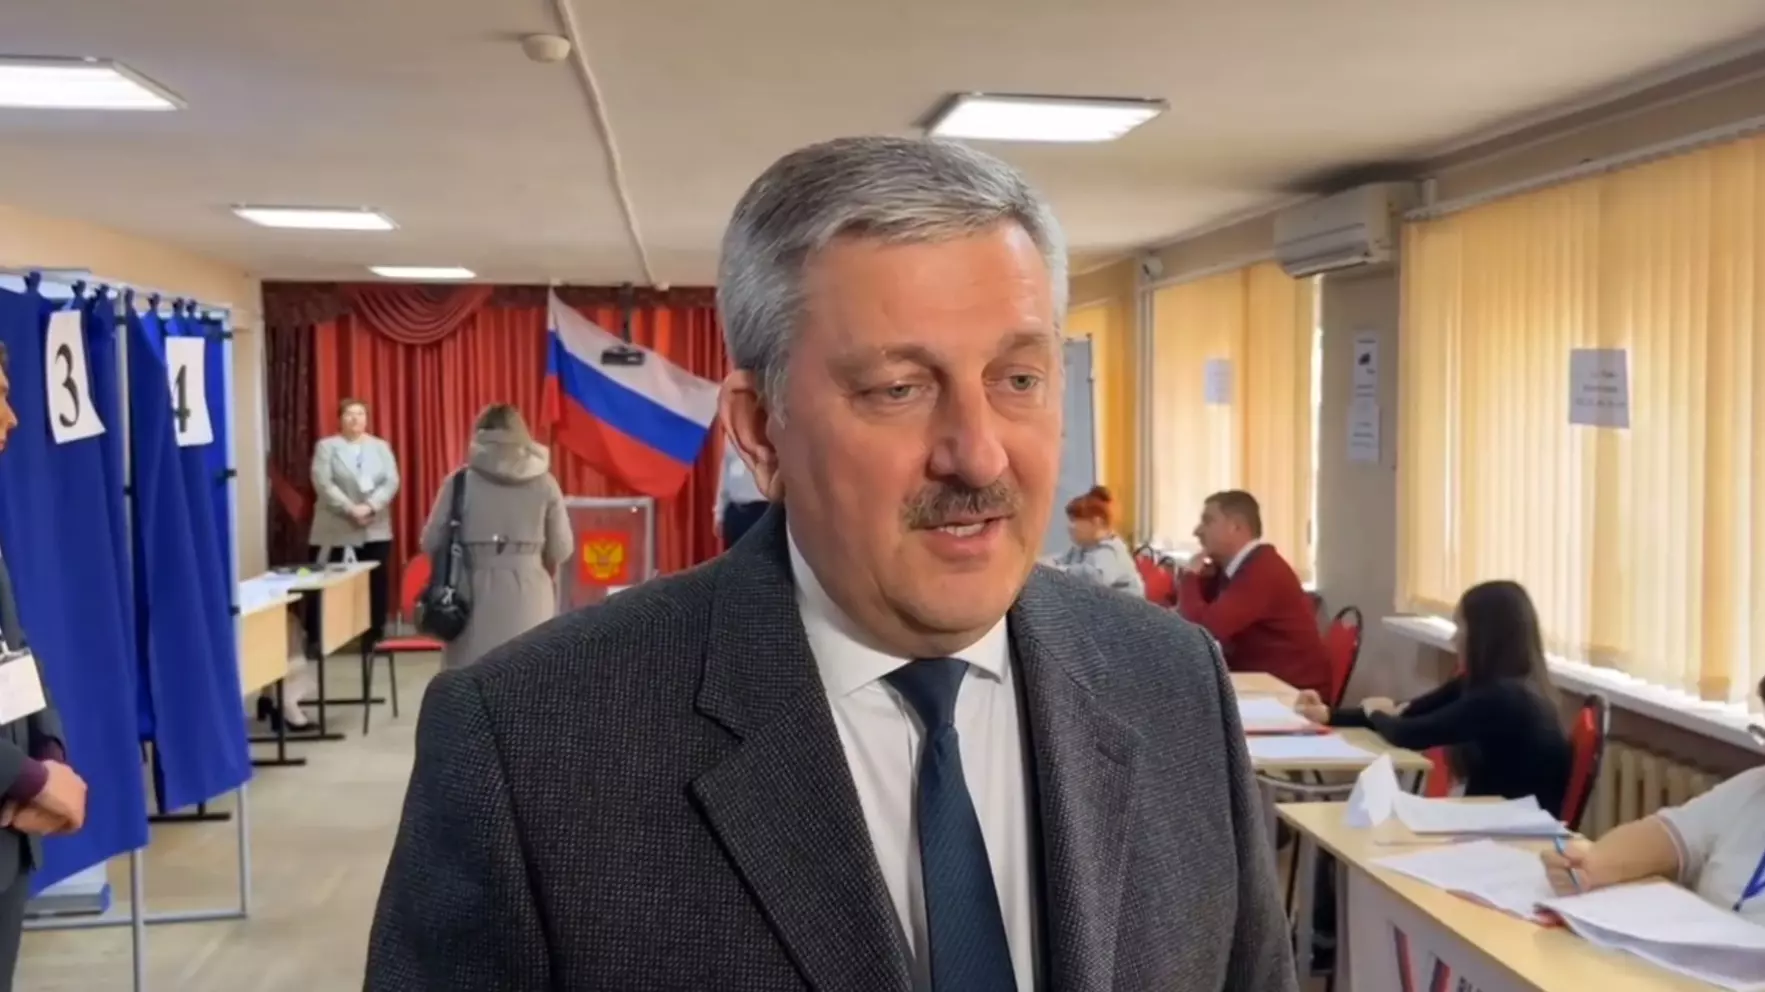 Мэр Волгограда Марченко рассказал о ходе голосования на выборах президента